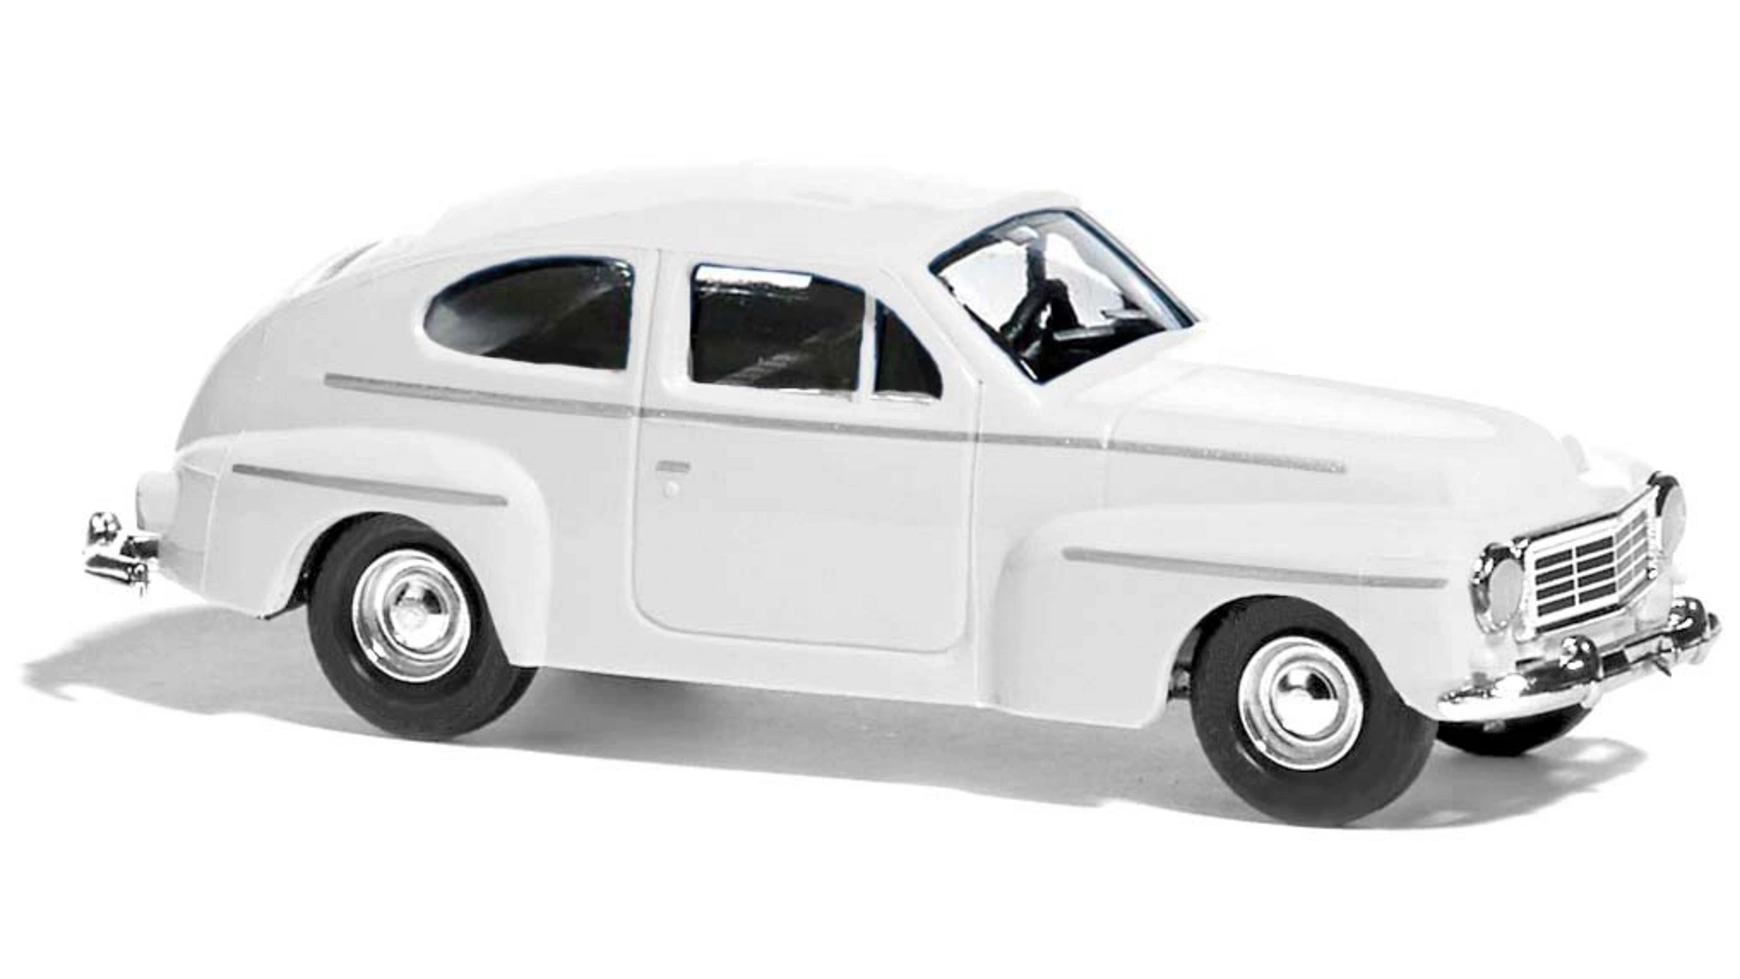 Комплект Busch Modellspielwaren 1:87: Volvo 544 busch modellspielwaren 1 87 vw beetle с овальным окном полицейский 1955 года выпуска